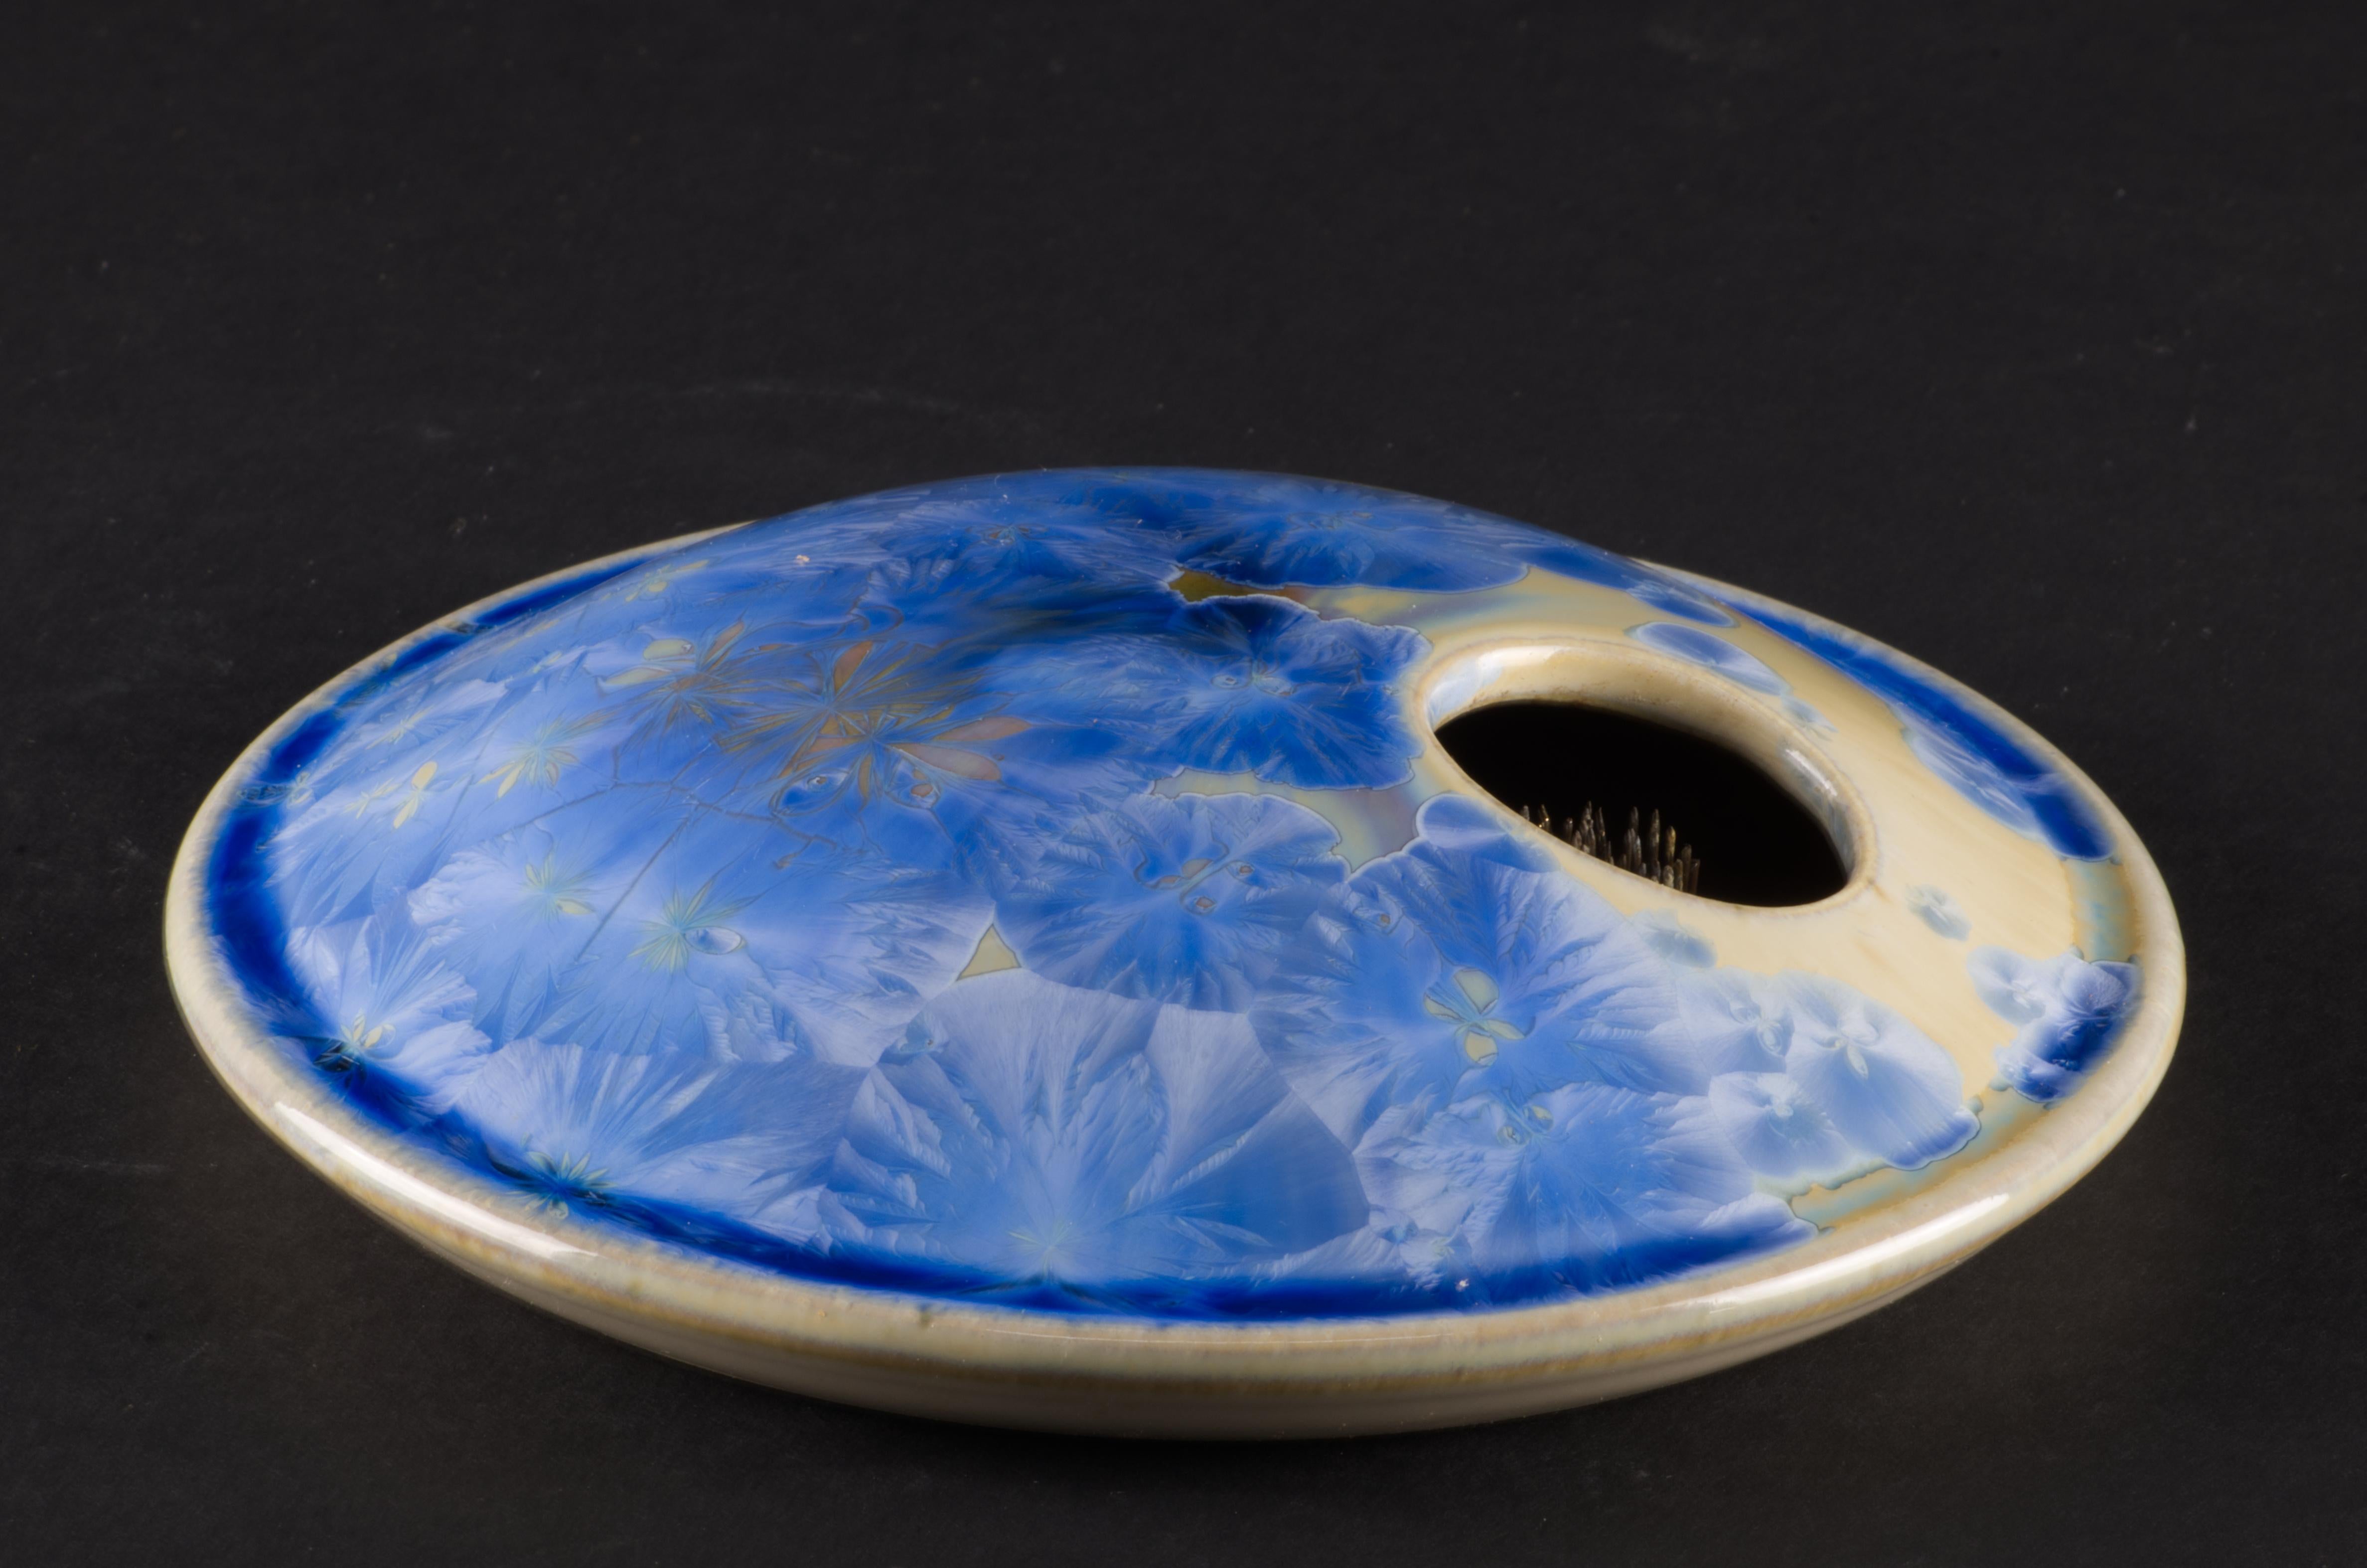  Le vase ikebana en céramique de Vintage Studio Pottery est décoré d'une glaçure cristalline dans une palette de bleu et de jaune éclatants. Le vase a été jeté à la main sur une roue ; les cristaux de couleur bleue sur une base de couleur jaune